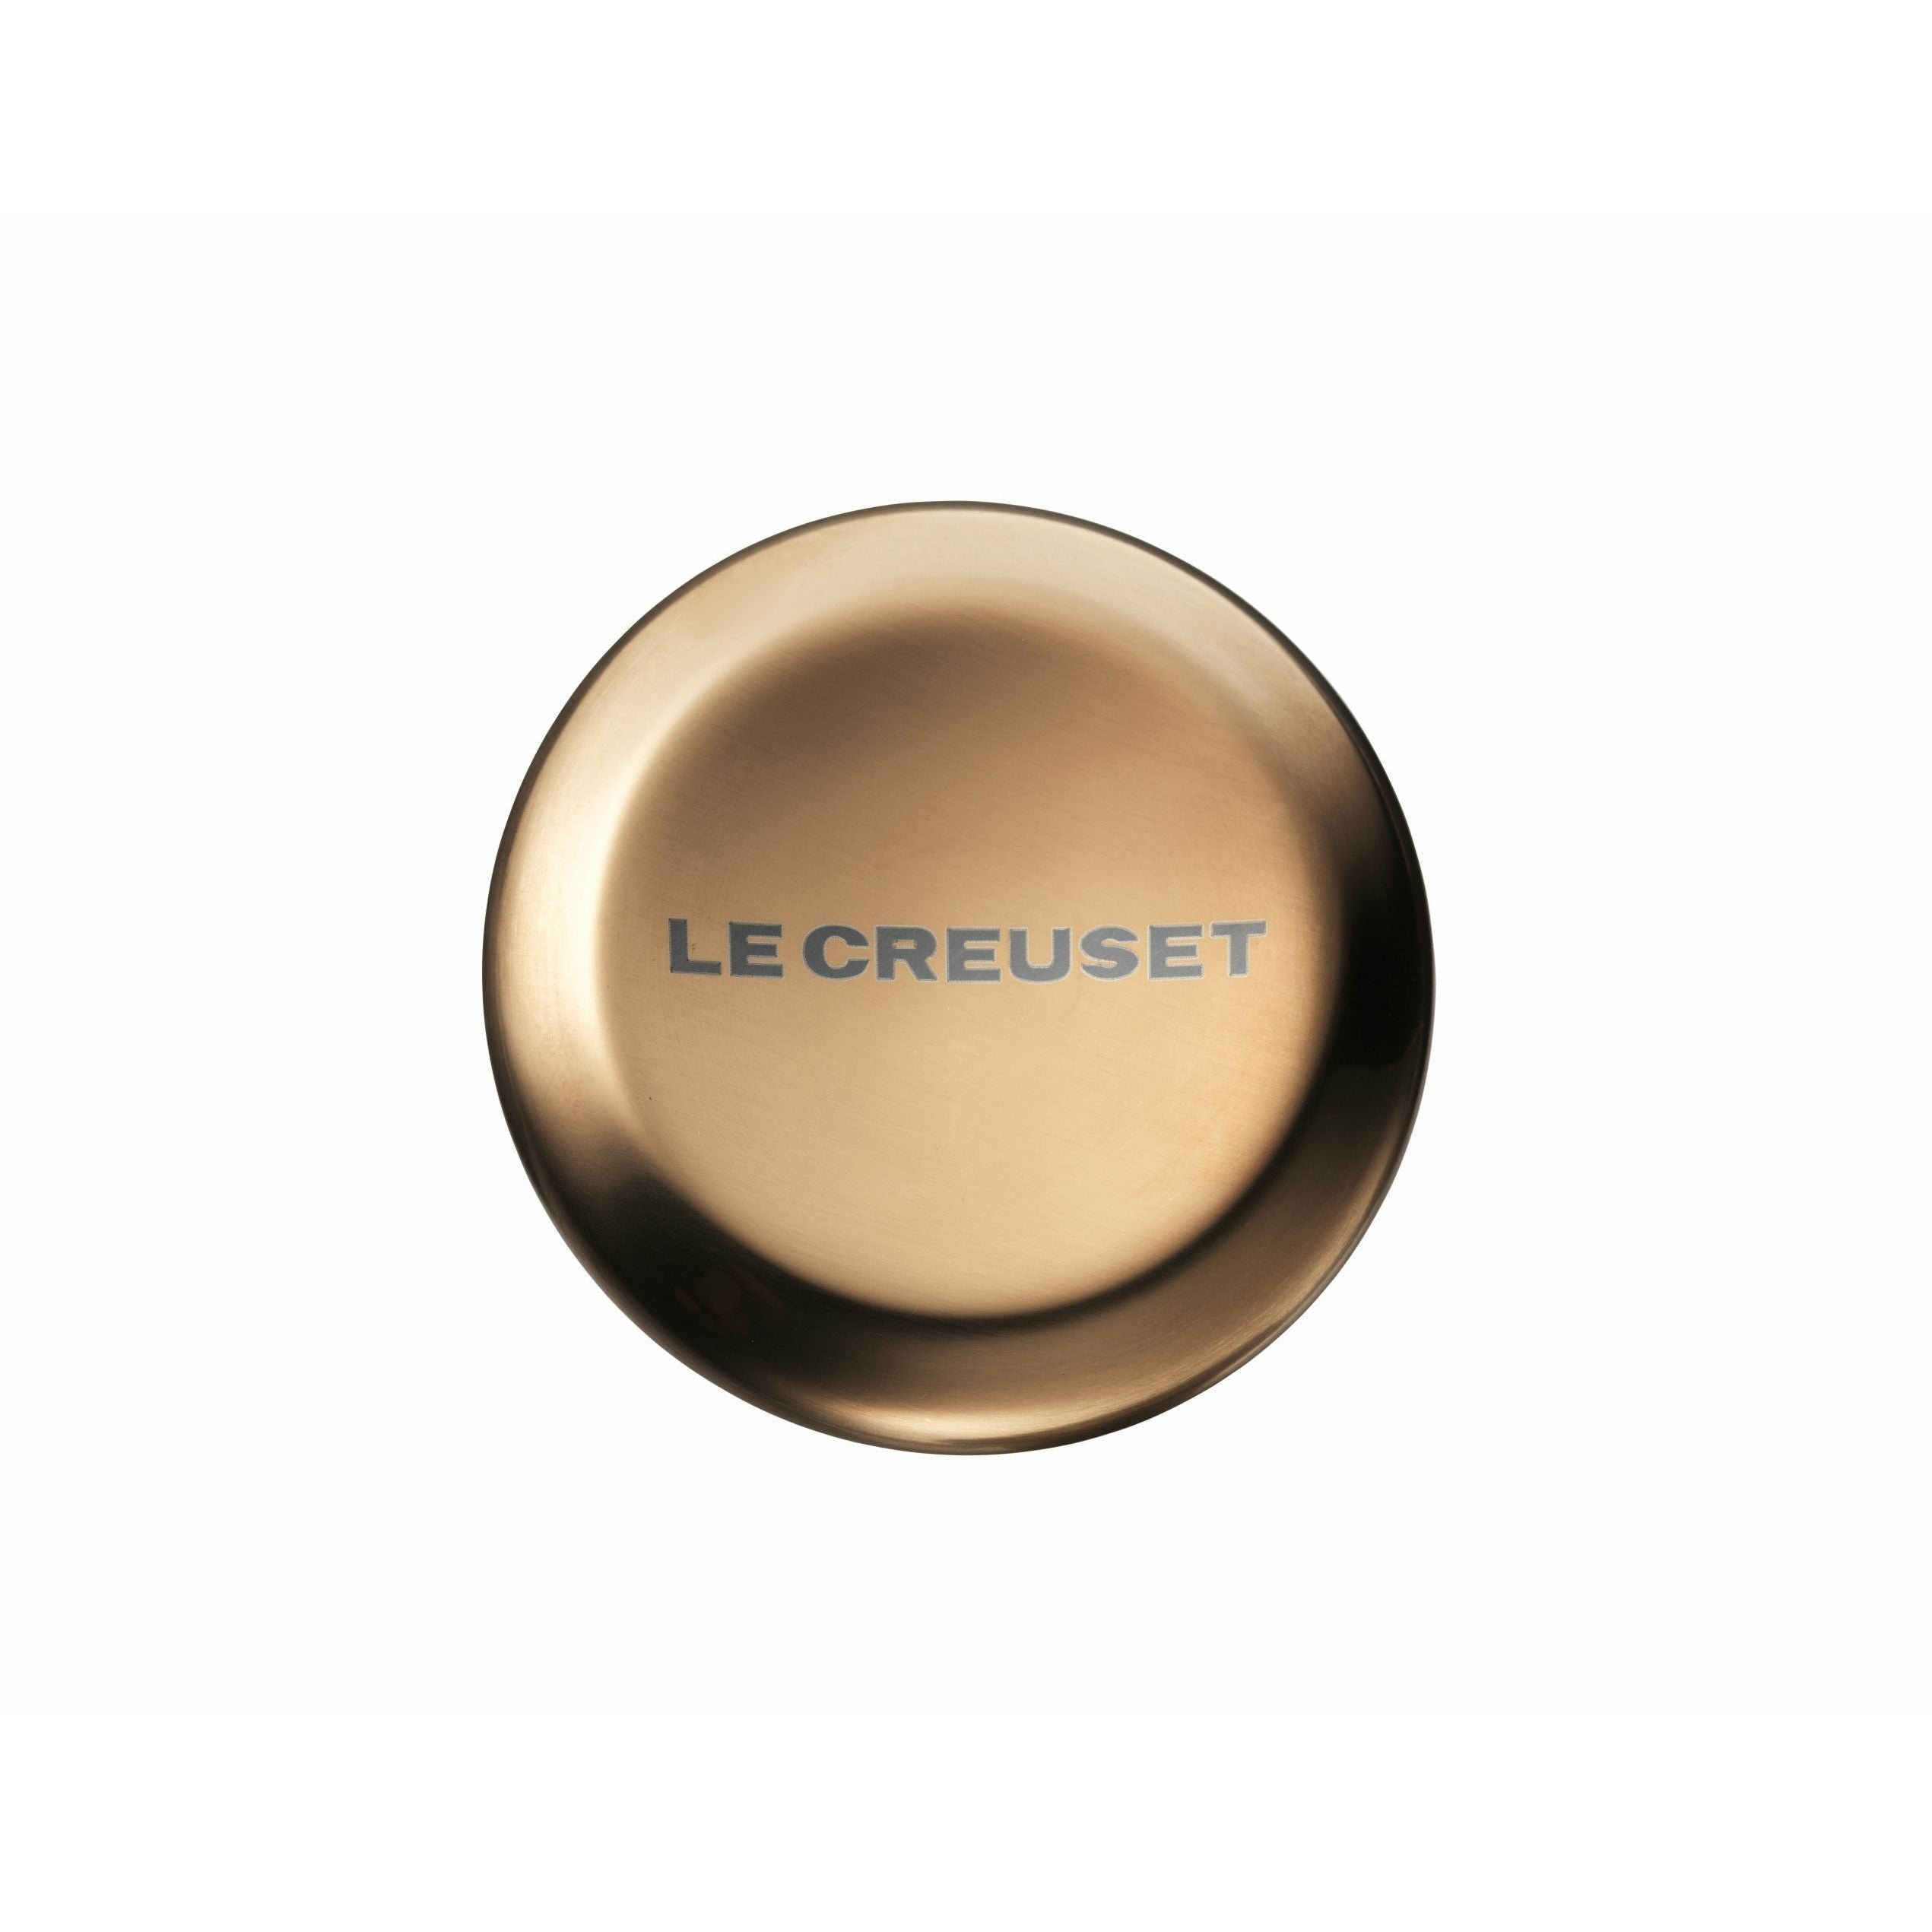 Knoflíková knoflík Le Creuset, 5,7 cm